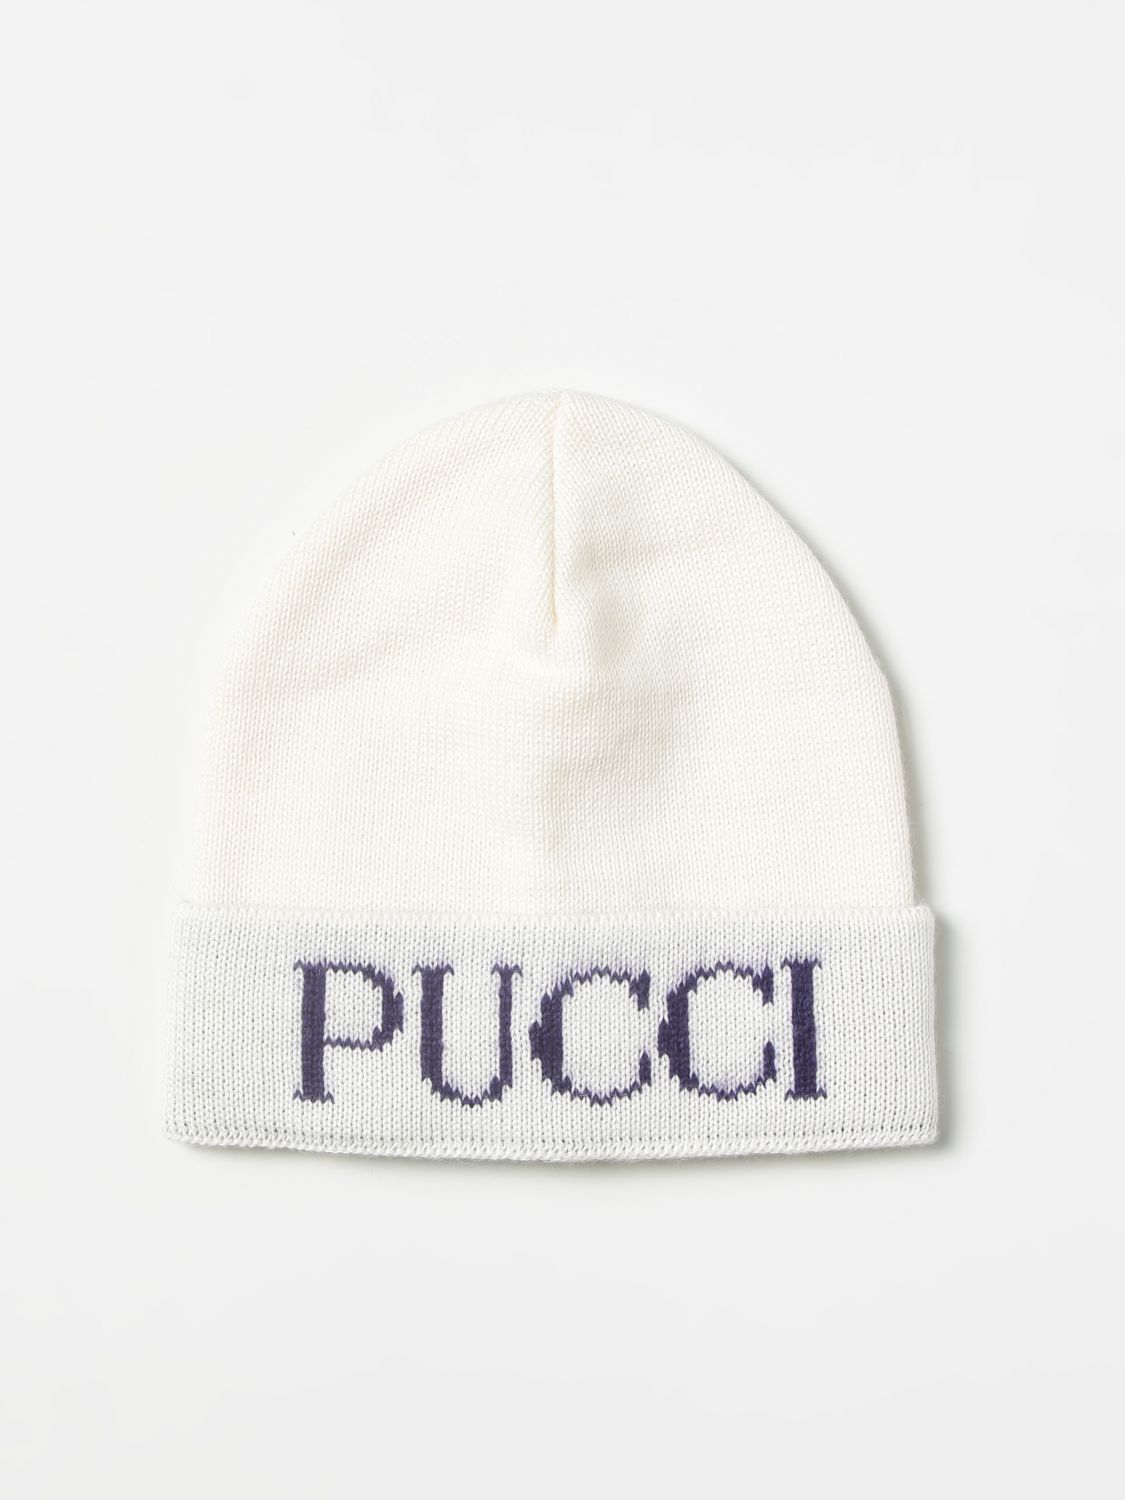 ガールズ 帽子 Emilio Pucci: ガールズ 帽子 Emilio Pucci キッズ アイボリー 1